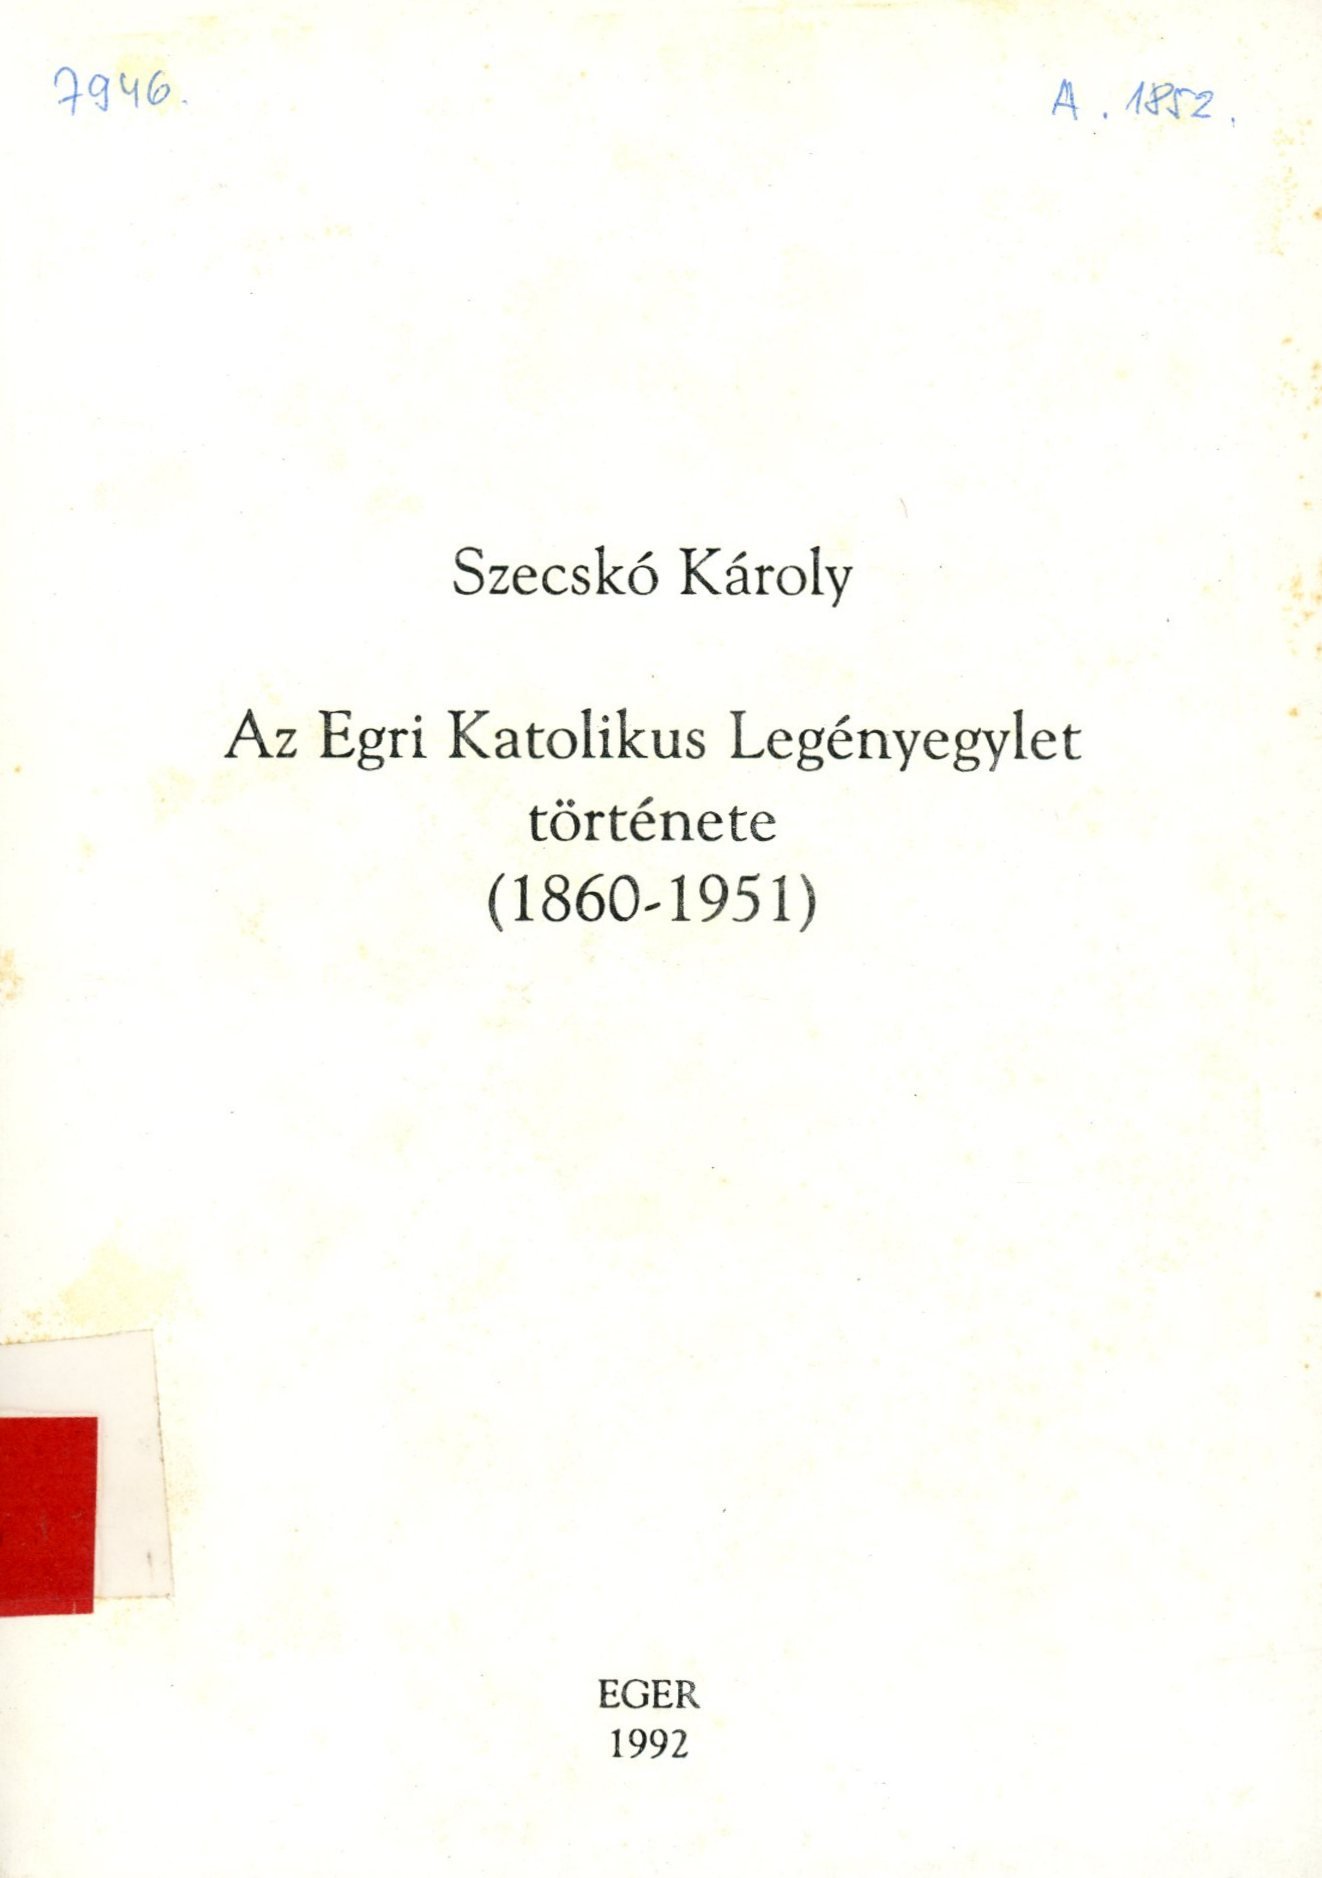 Szecskó Károly (Erkel Ferenc Múzeum és Könyvtár, Gyula CC BY-NC-SA)